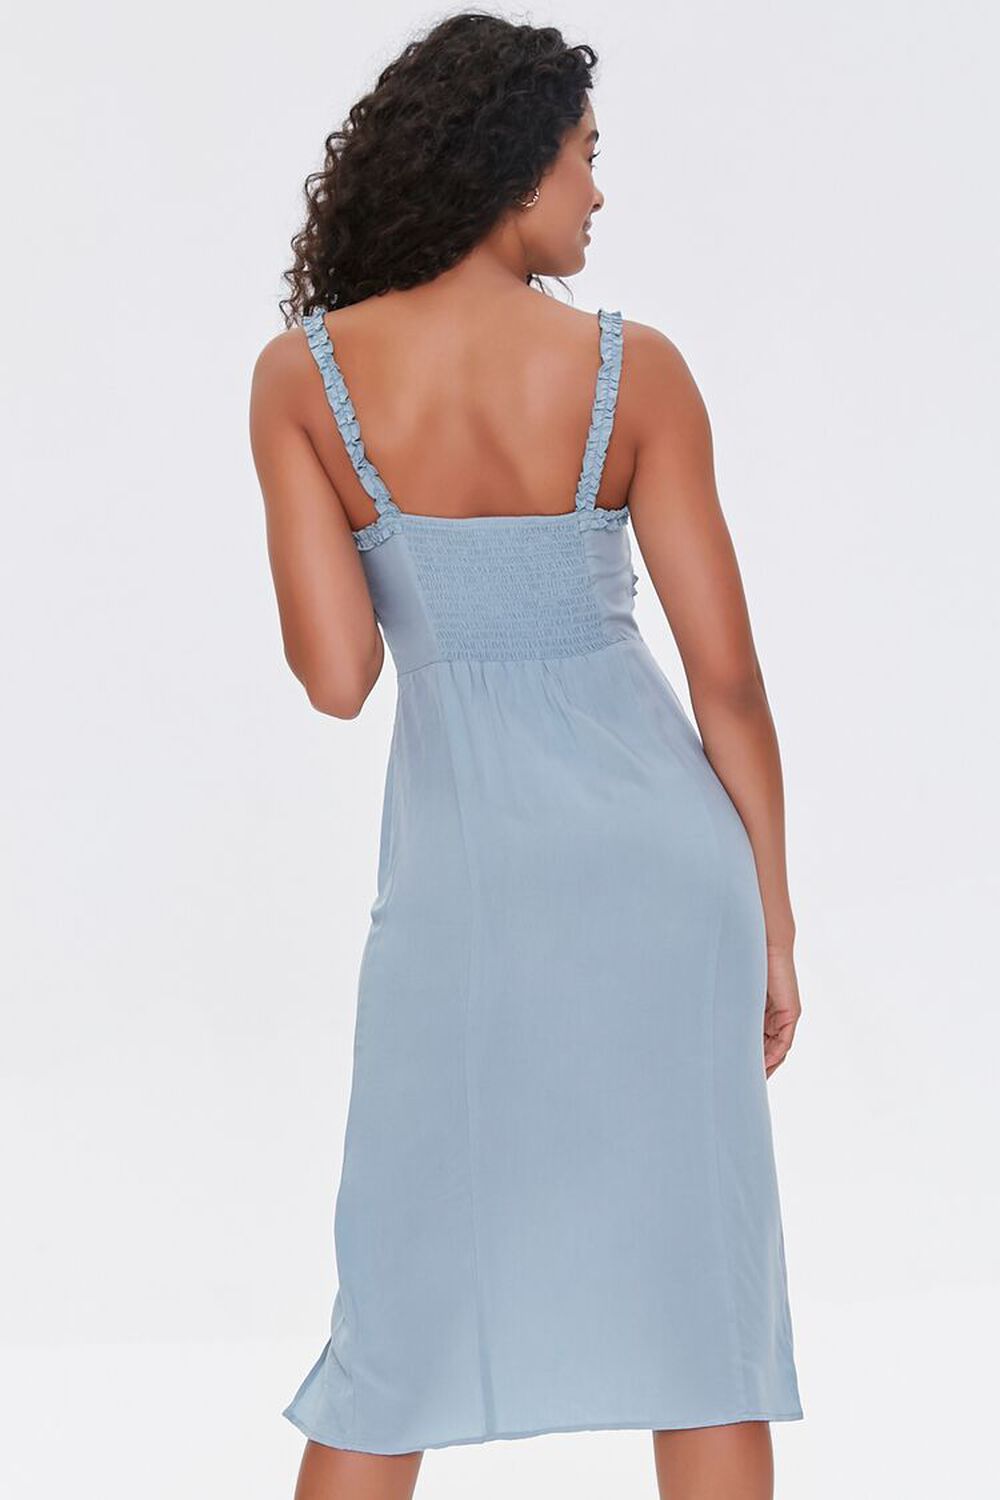 DUSTY BLUE Sweetheart Ruffle-Trim Dress, image 3